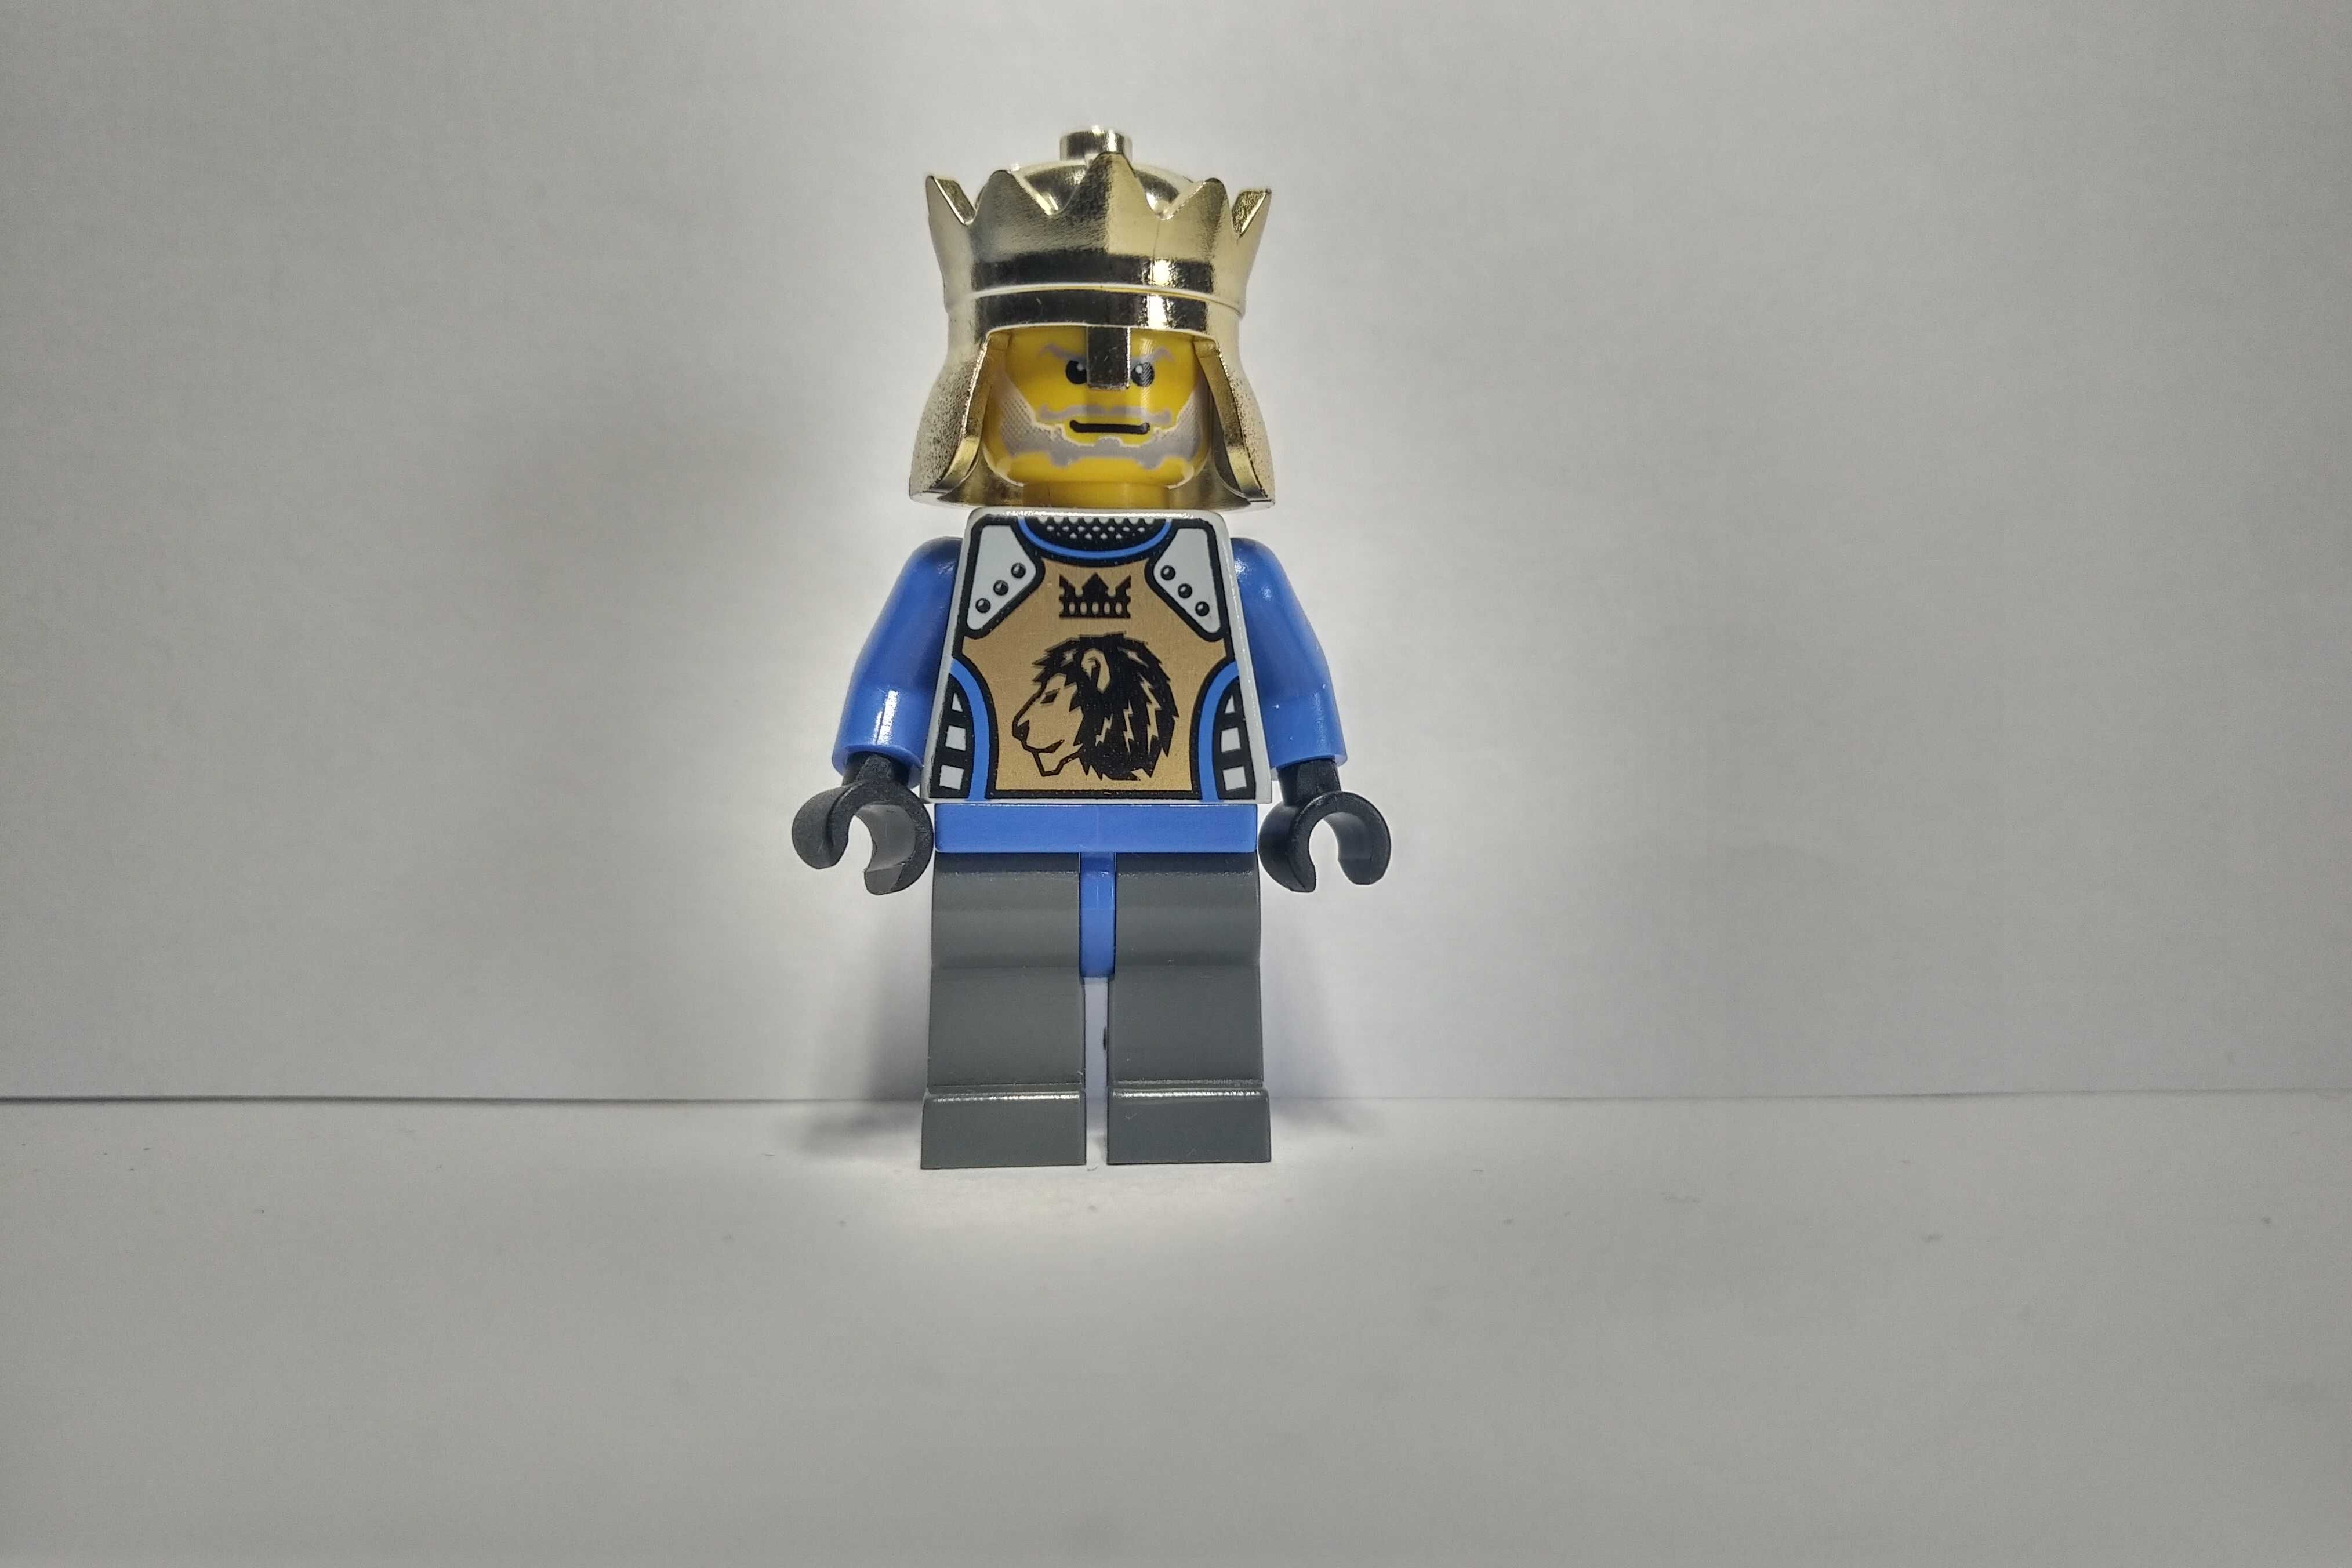 Lego Castle Zamek figurka cas258 Knights Kingdom II King Mathias król